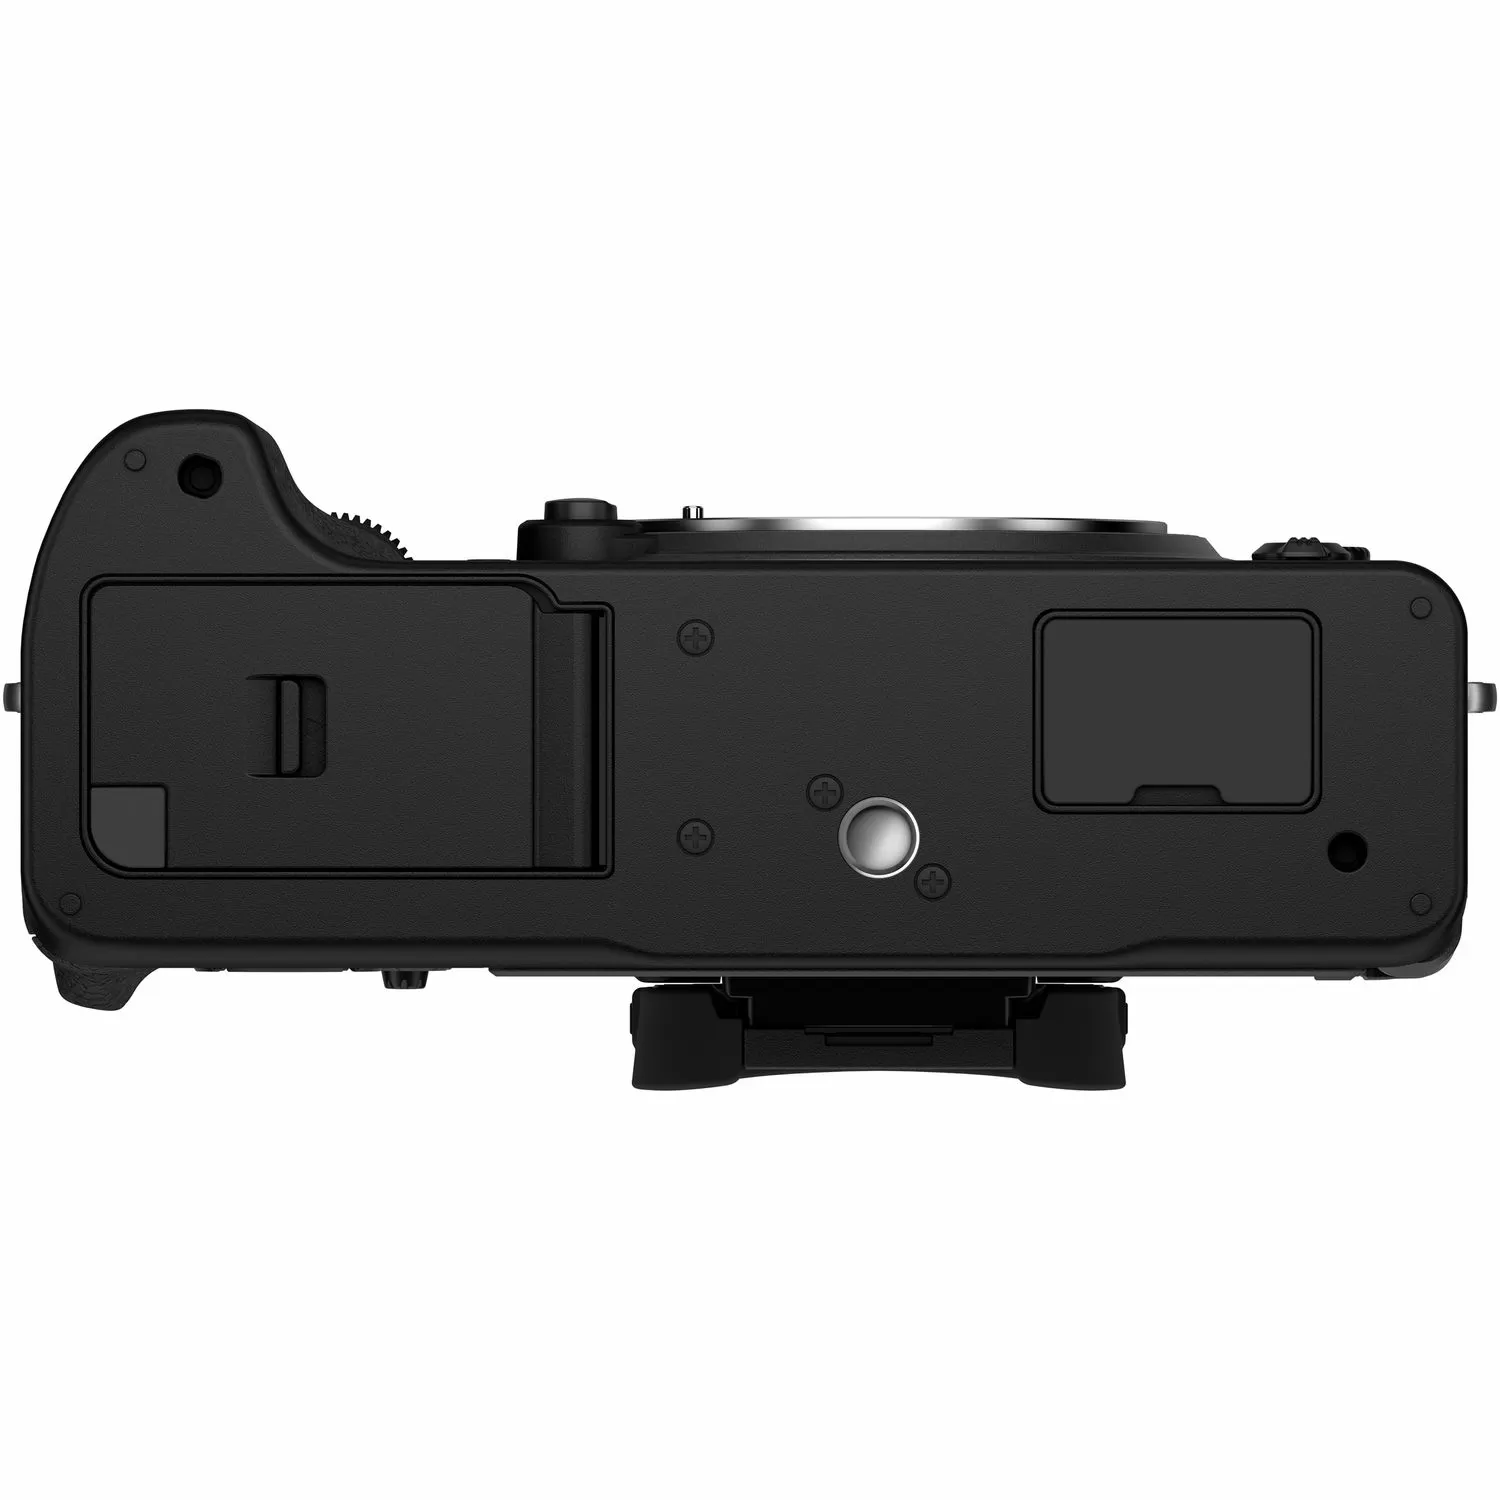 Fujifilm X-T4 Kit (XF 16-80mm f/4 R OIS WR) Black